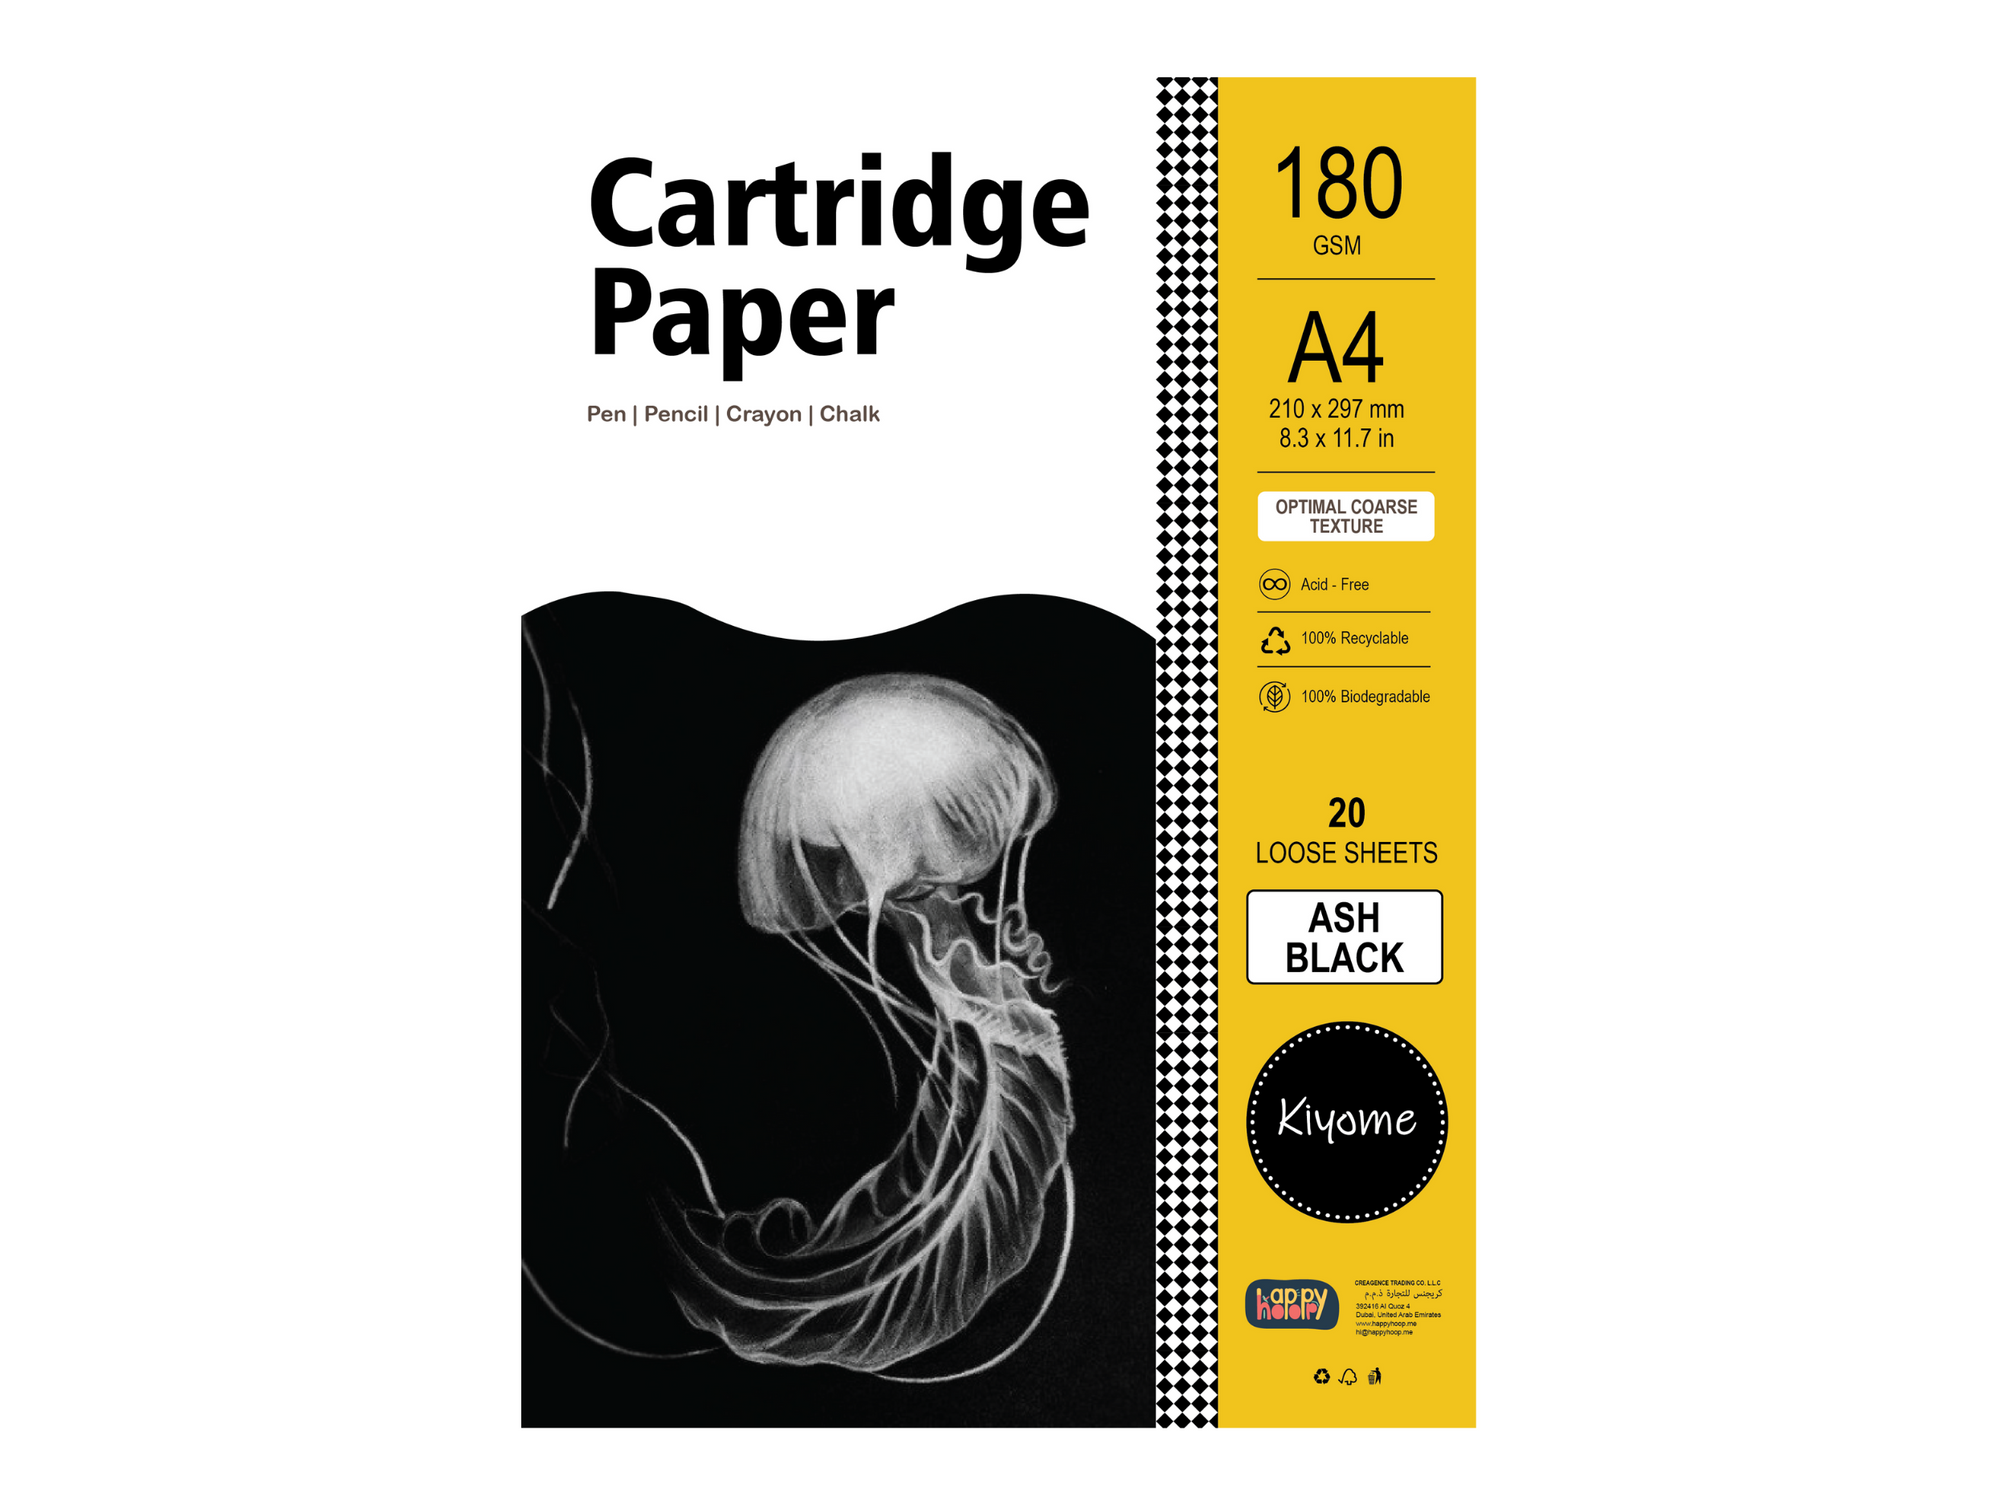 Kiyome Ash Black Cartridge Paper | 180 GSM | A4 | 20 Sheets